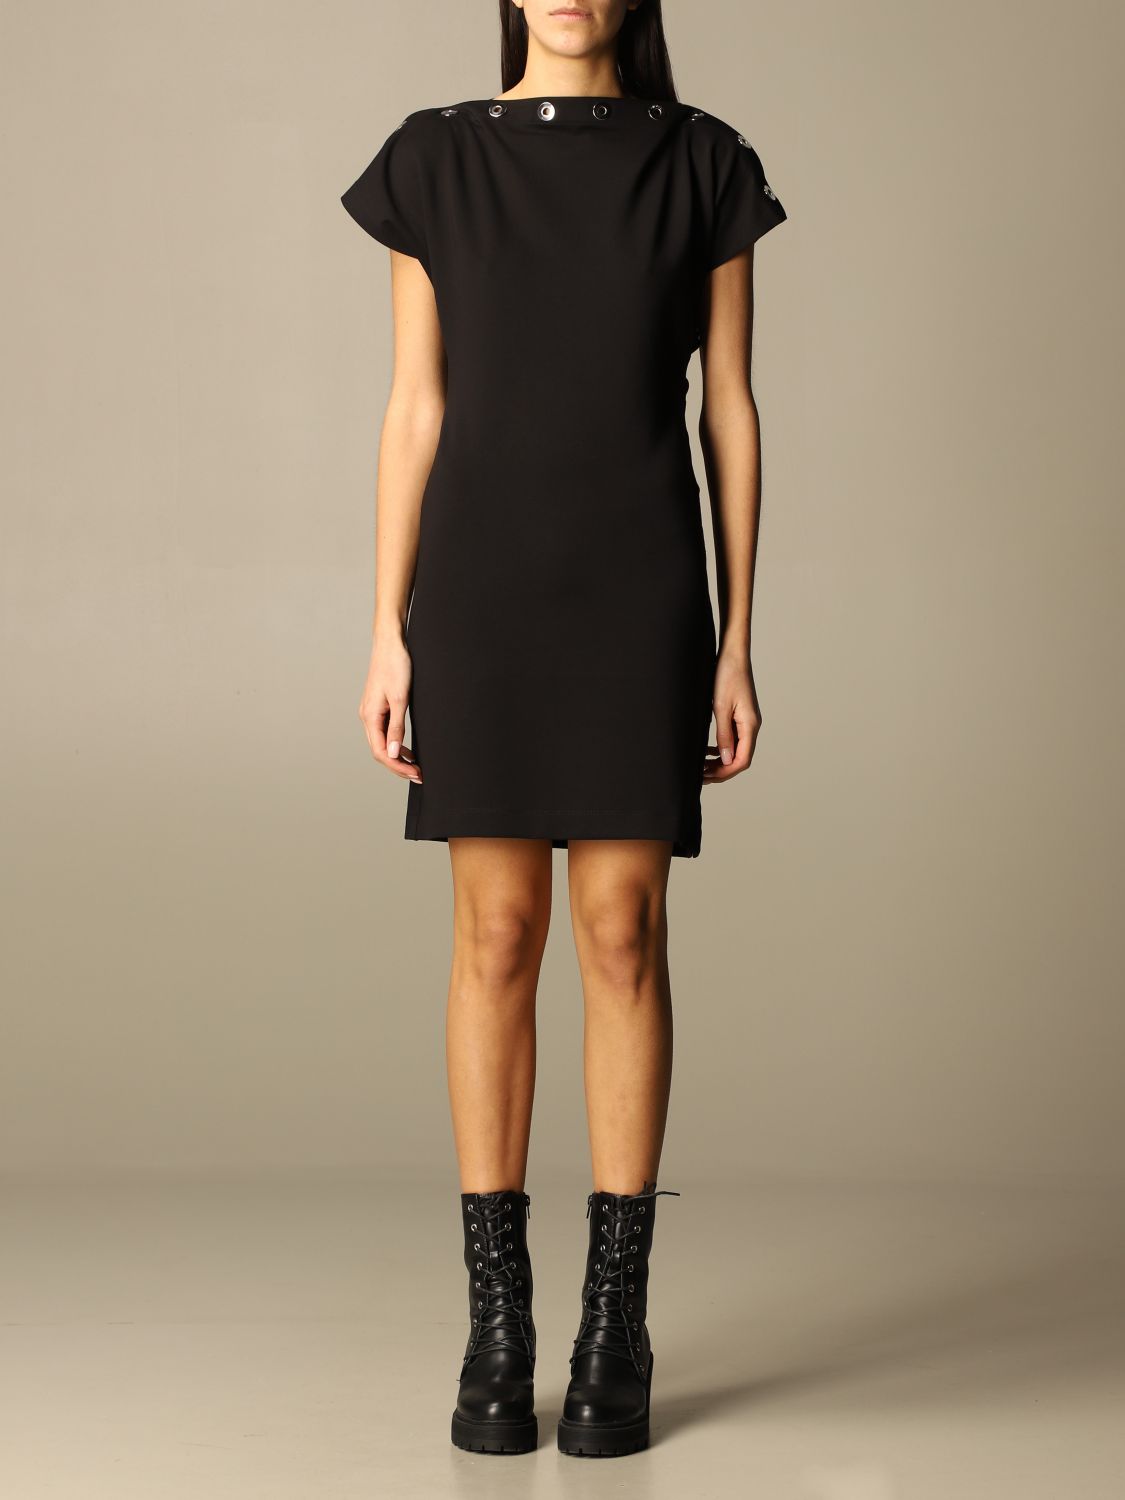 DIESEL: dress in cotton with metallic sails - Black | Diesel dress ...